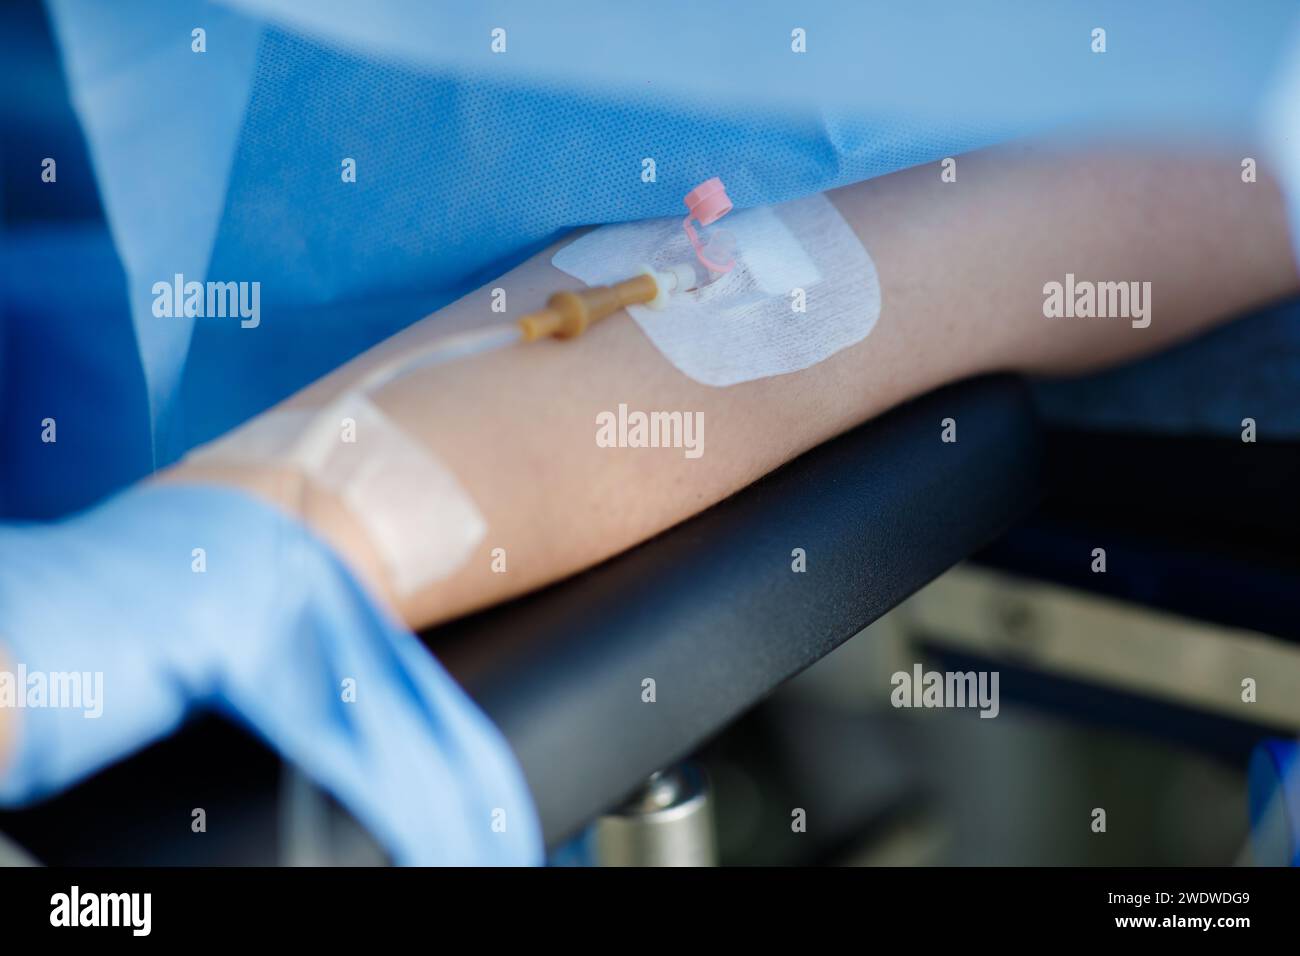 Misurazione della saturazione di ossigeno nel sangue durante l'intervento chirurgico. Foto di alta qualità Foto Stock